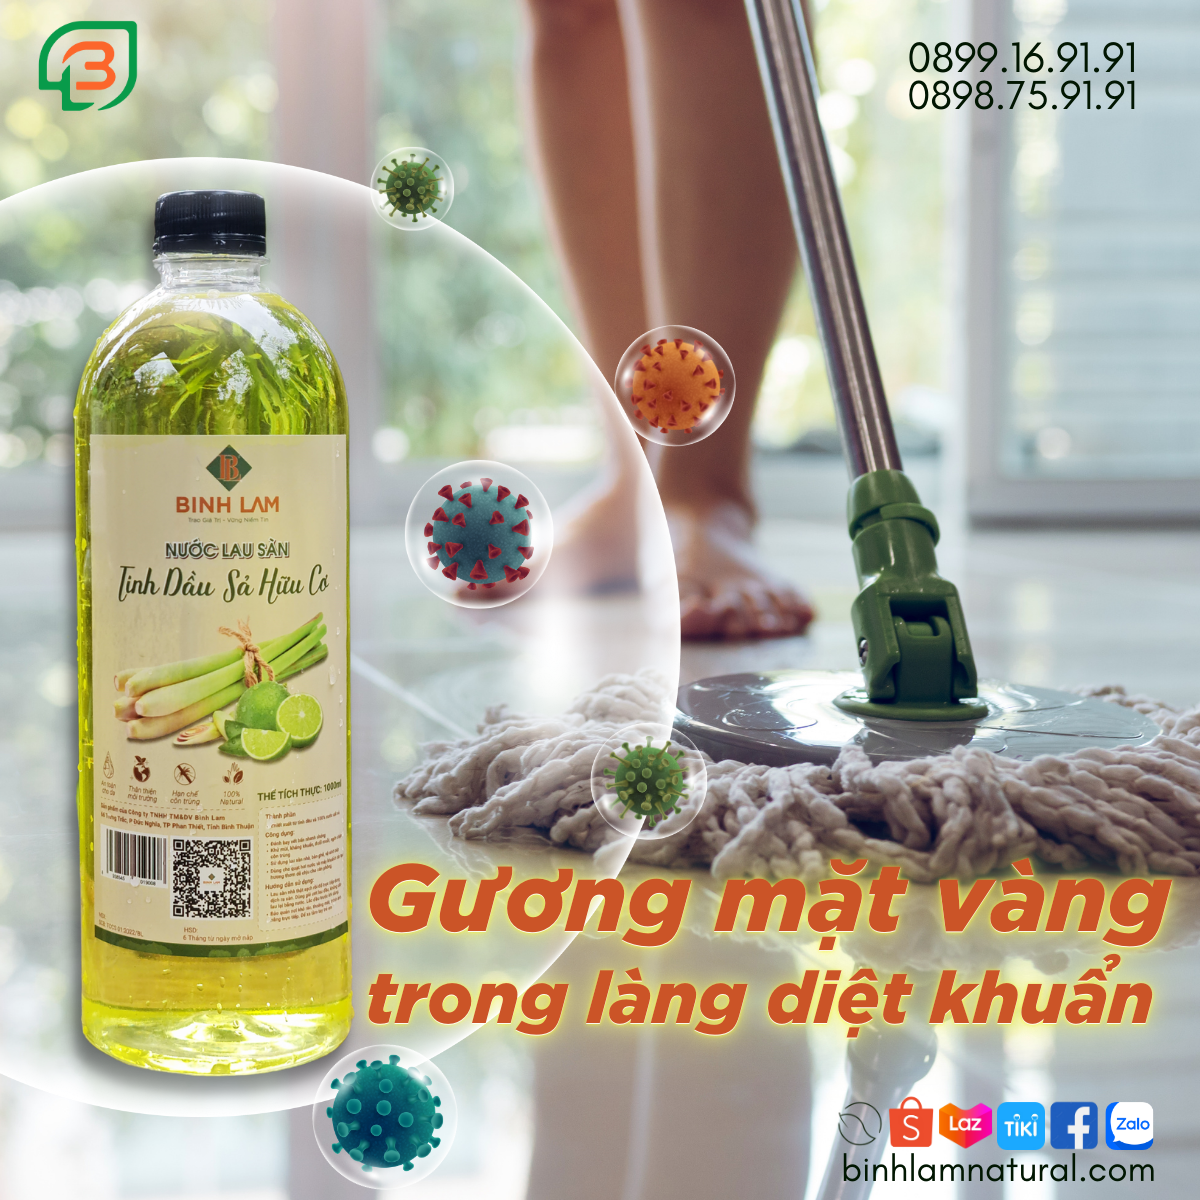 Bình Lam cung cấp lau sàn , xịt phòng, dầu gội và tinh dầu sả